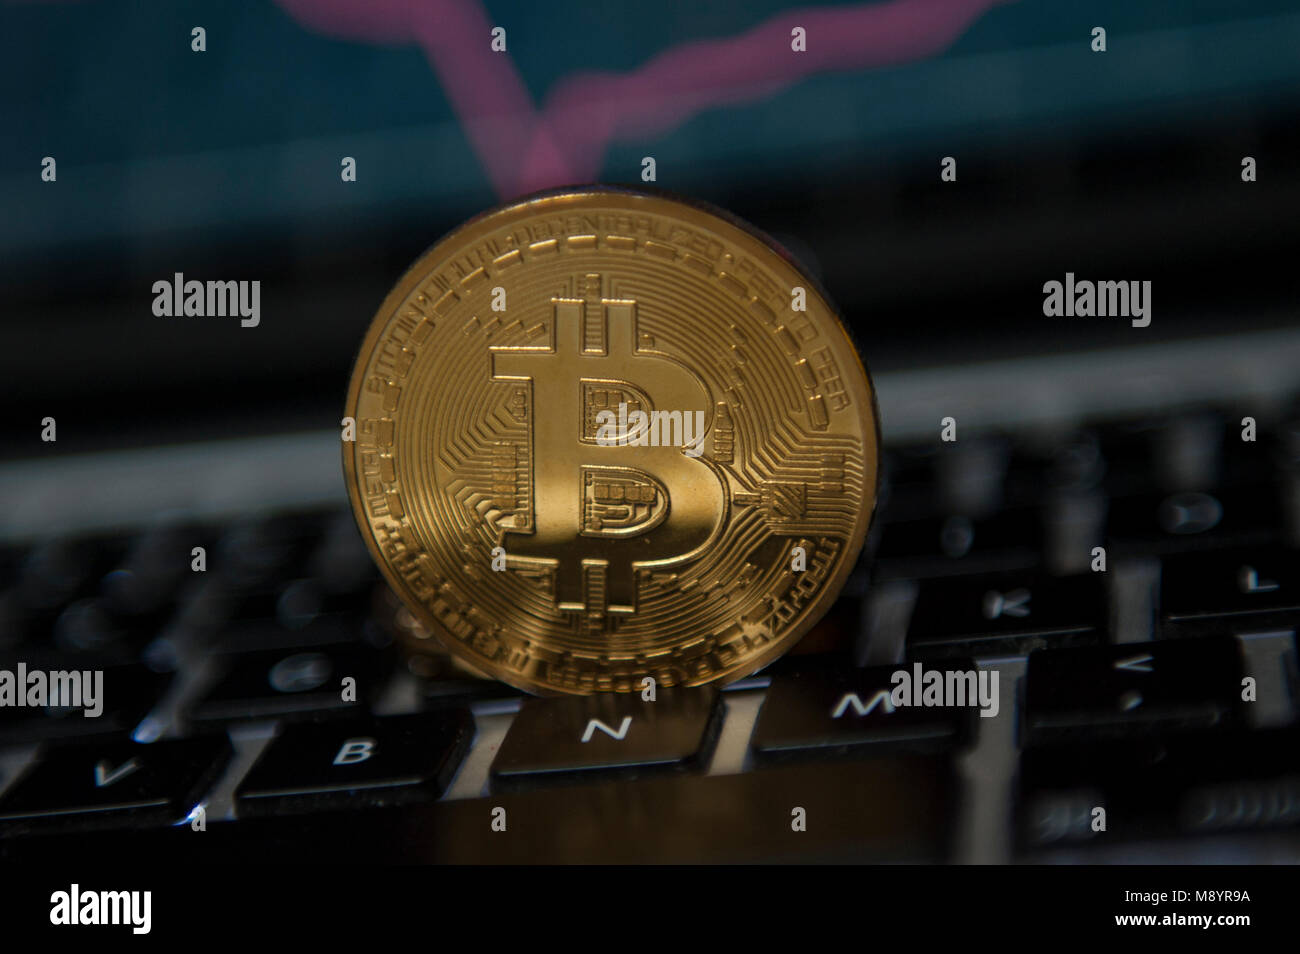 Vu cryptocurrency Bitcoin infront graphiques du marché boursier Banque D'Images